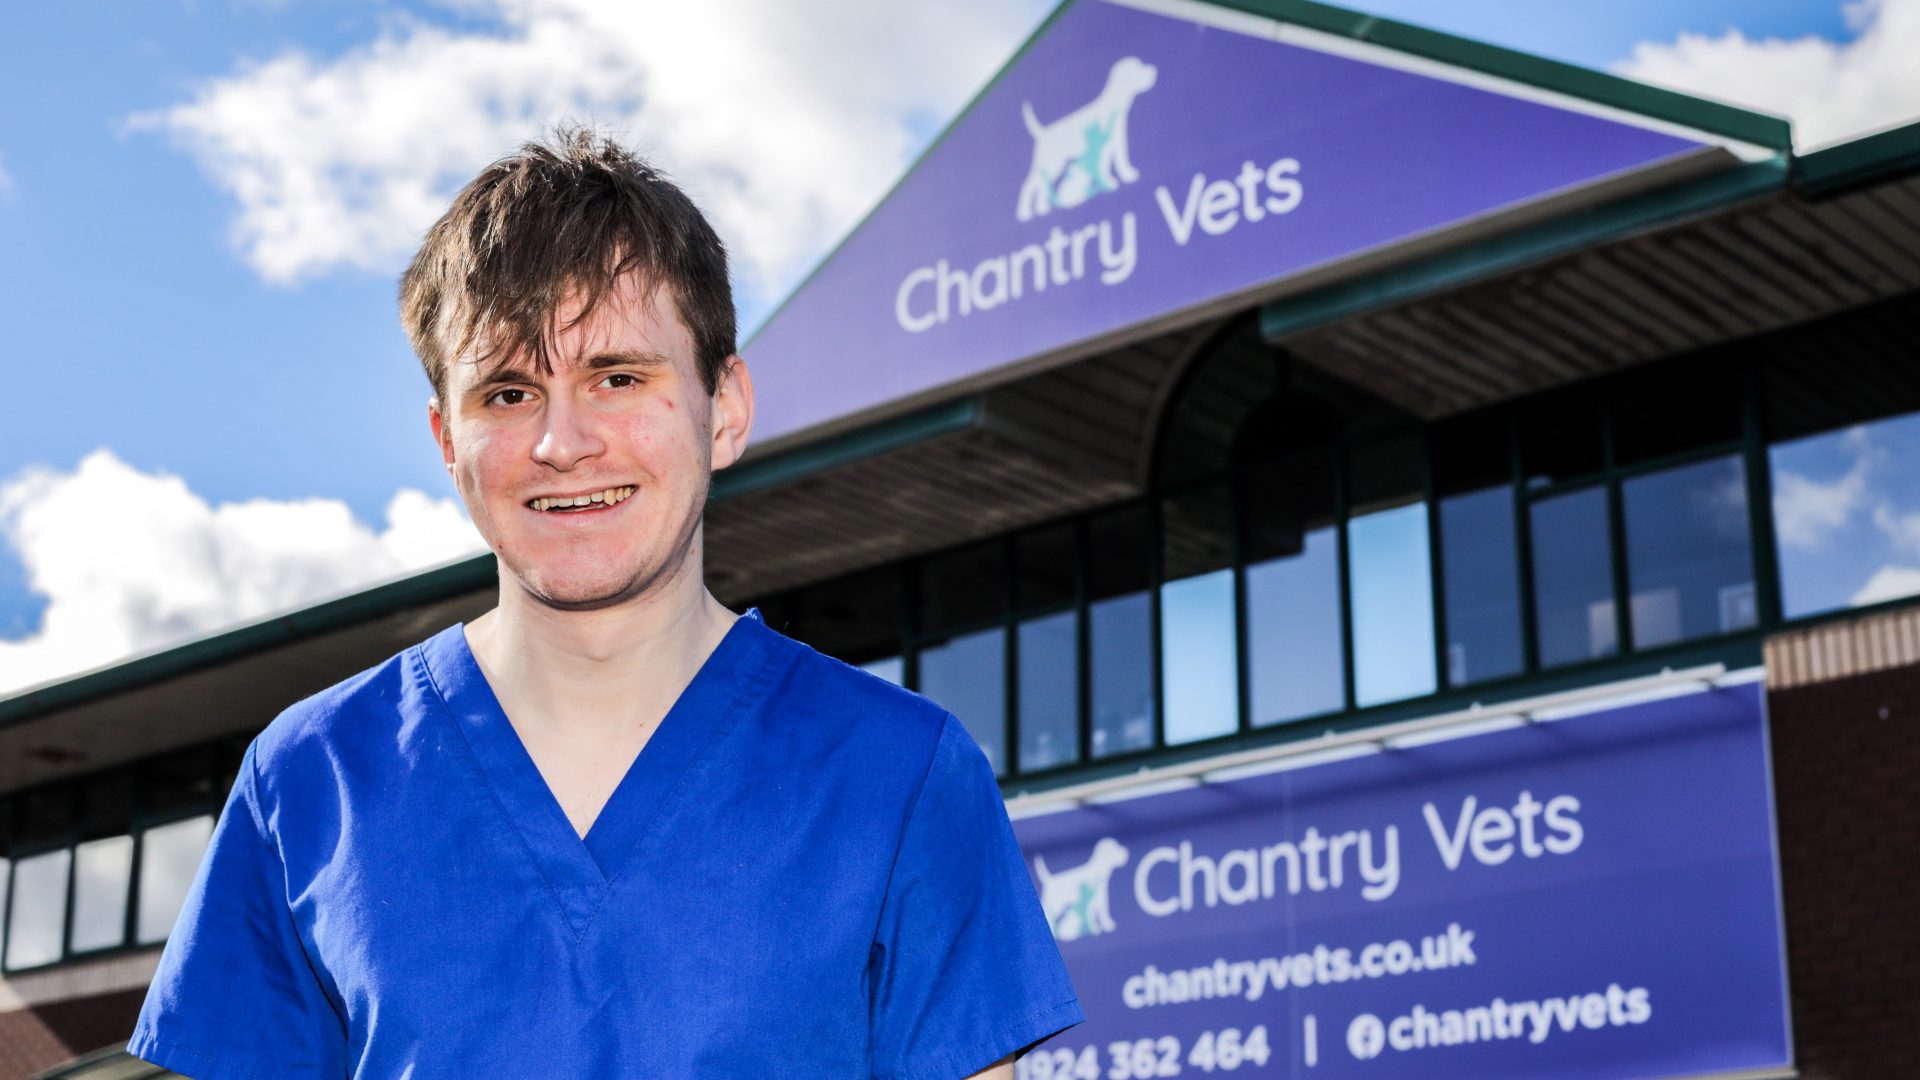 New grad Ben’s veterinary career is thriving